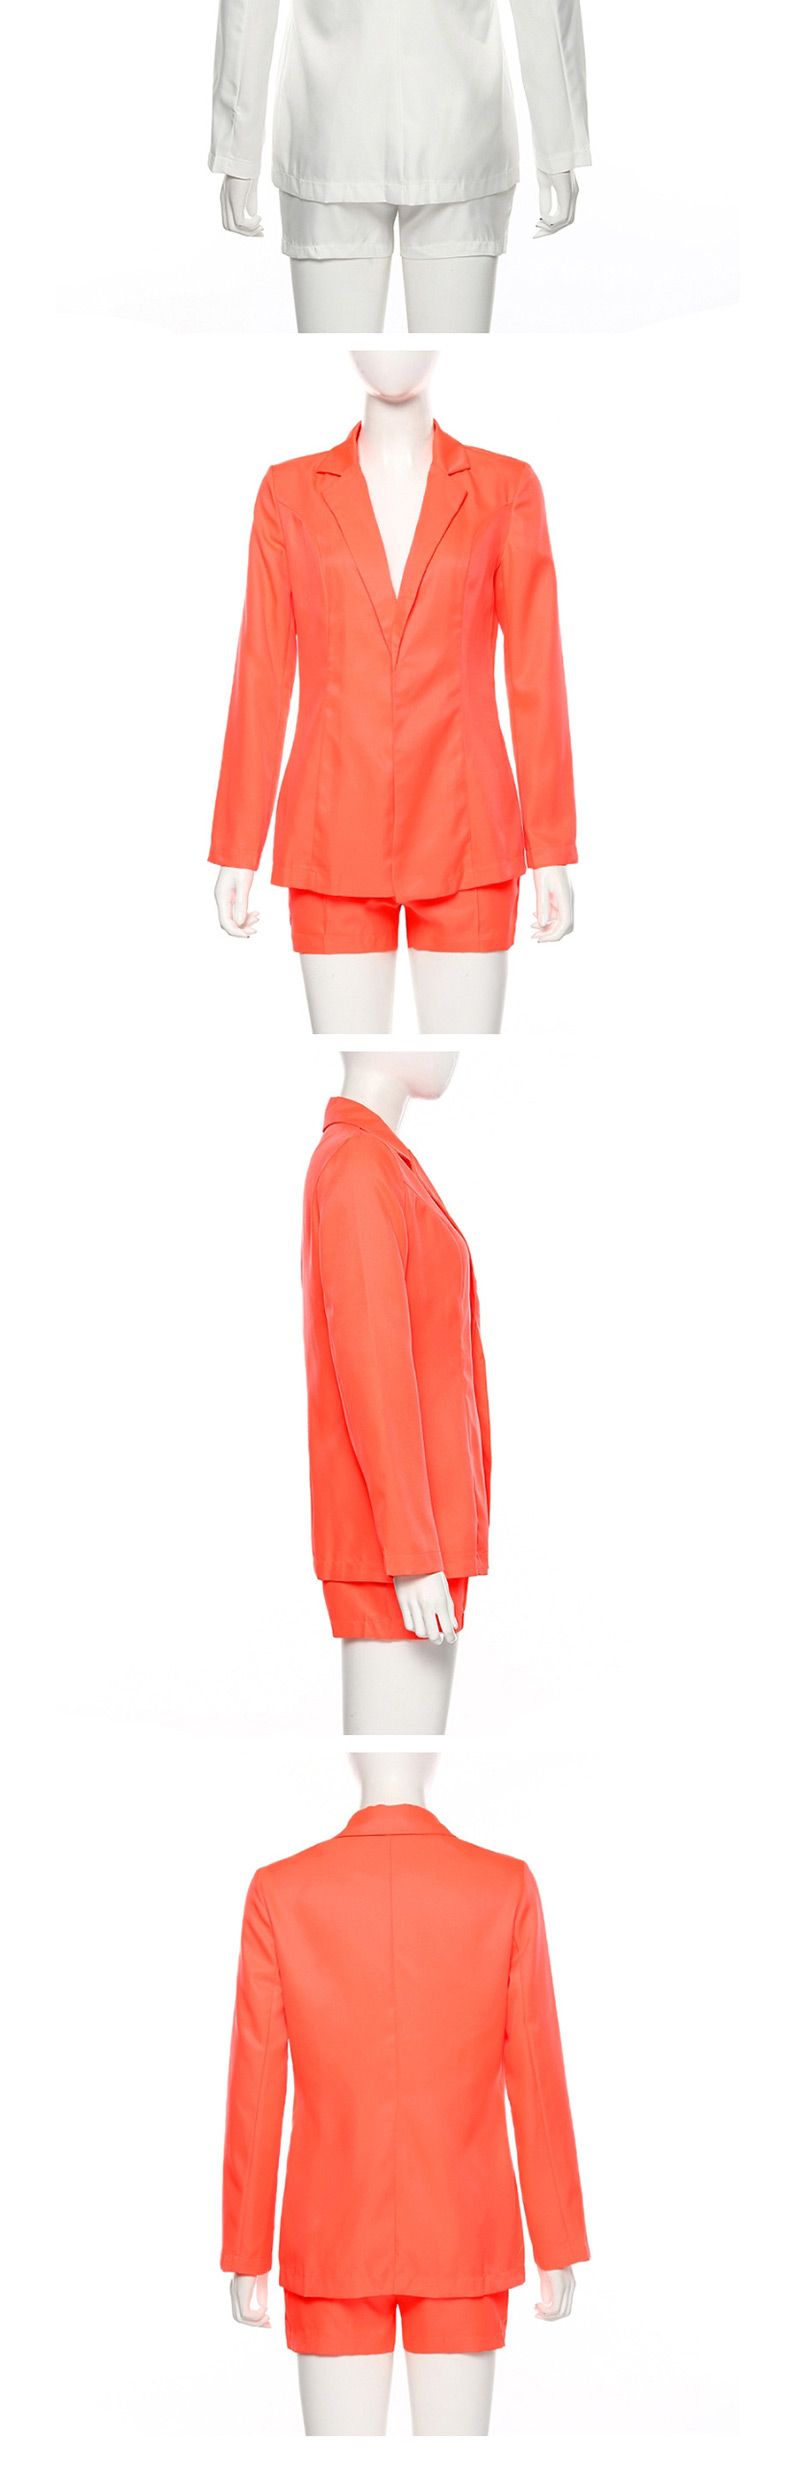 Fashion Orange Suit + High Waist Shorts Suit,Coat-Jacket